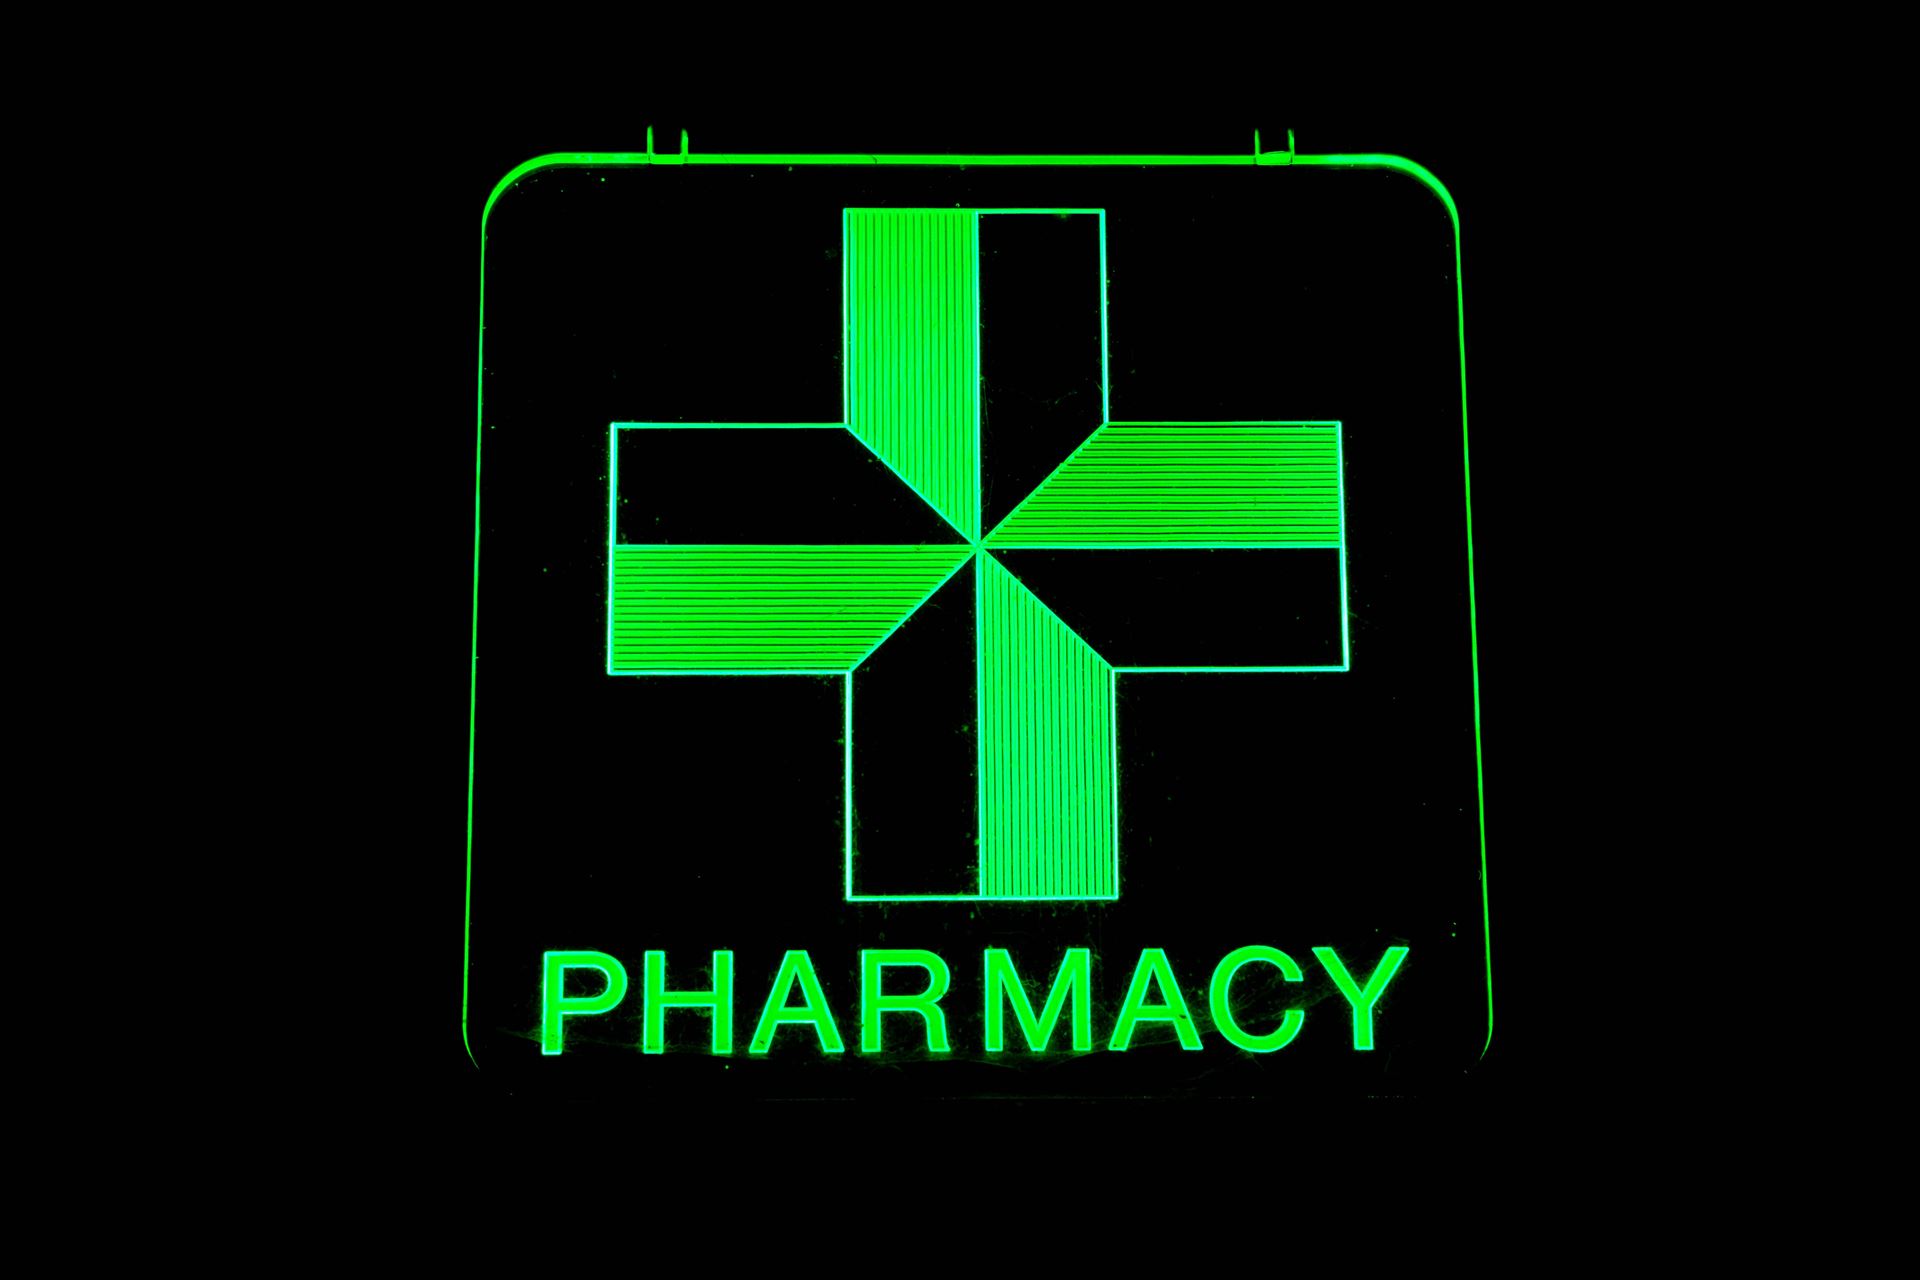 a pharmacy sign